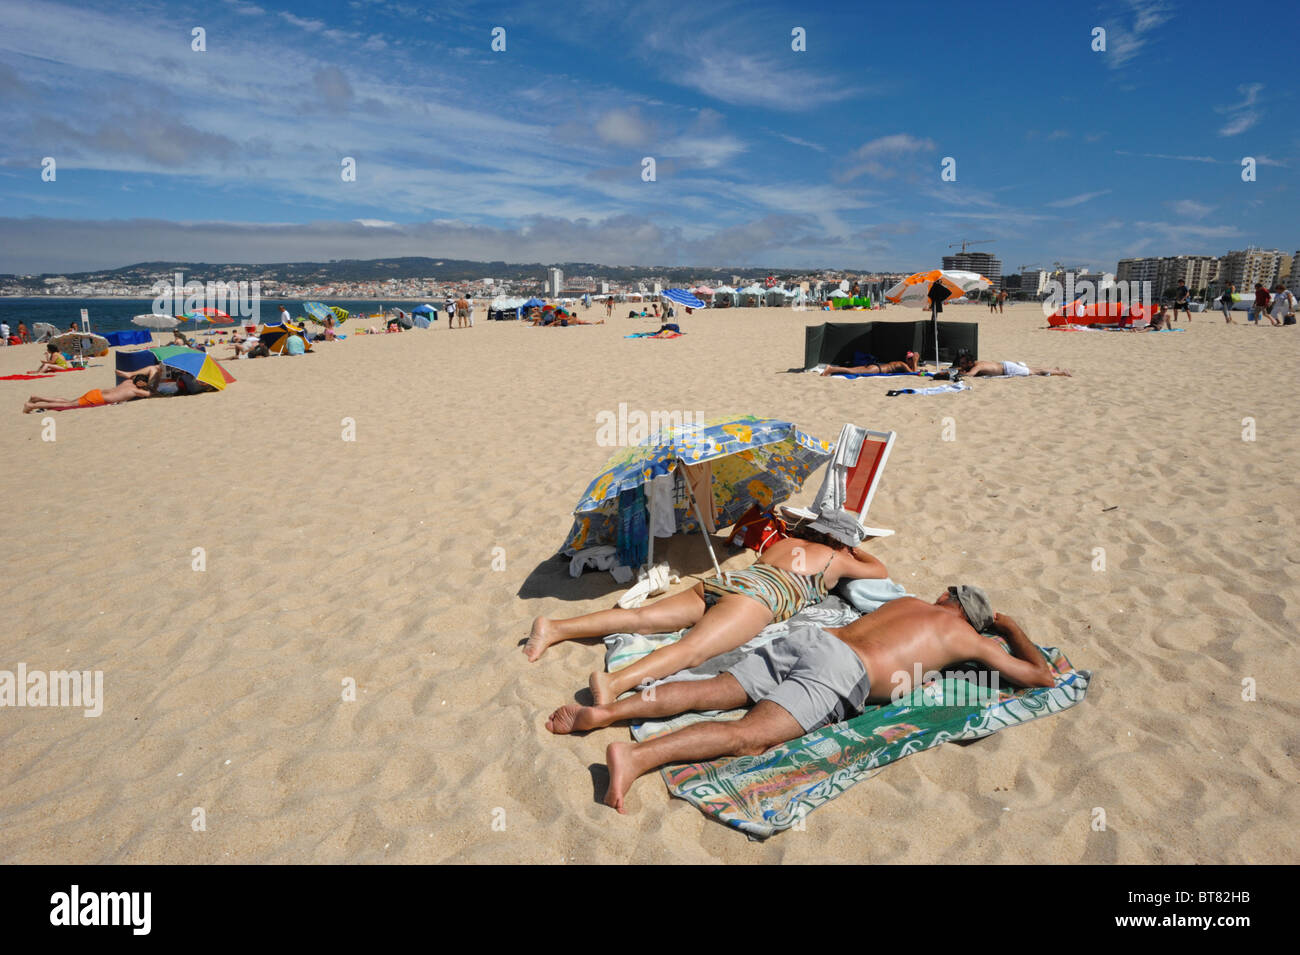 Deux personnes âgées à bronzer sur le sable plage de Figueira da Foz, Portugal Banque D'Images